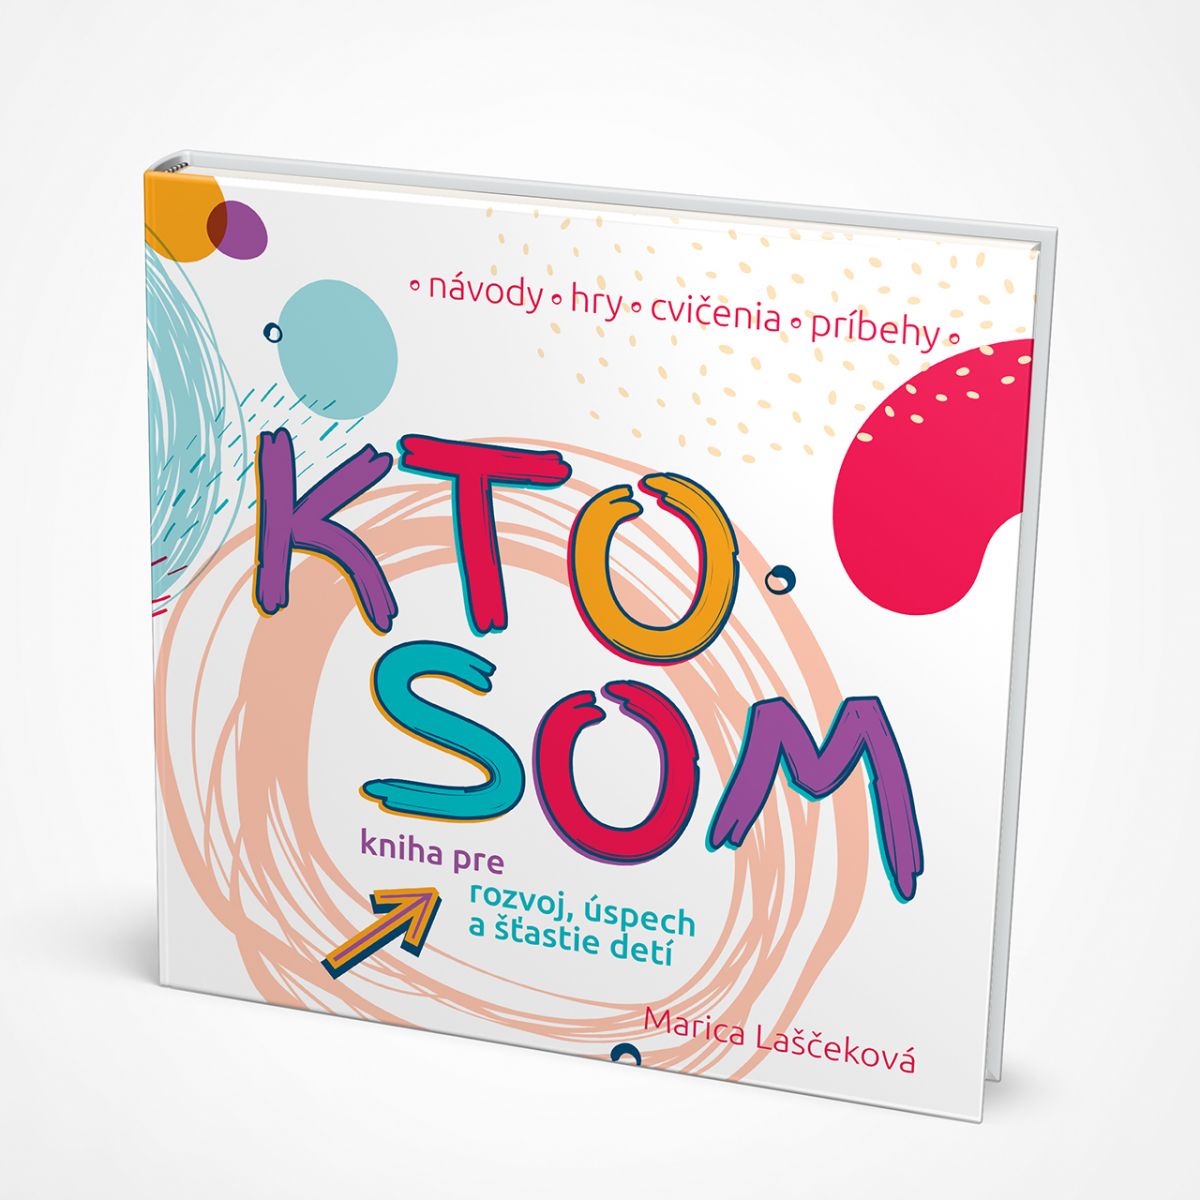 “KTO SOM” – kniha pre rozvoj, úspech a šťastie detí